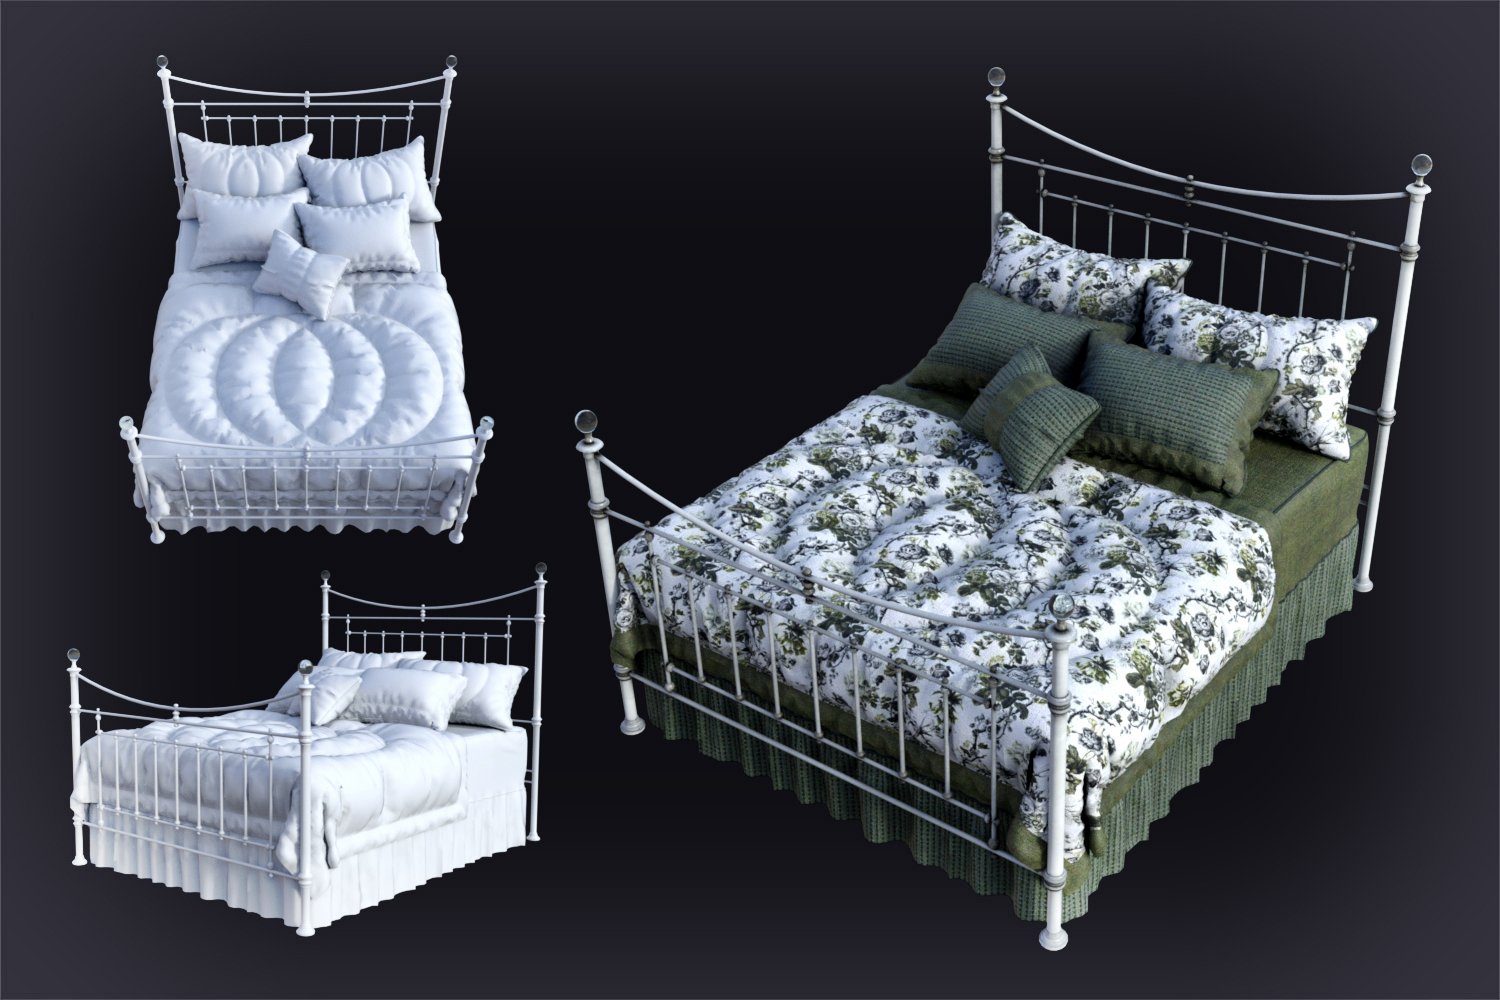 DGV Antique Beds by: DG Vertex, 3D Models by Daz 3D